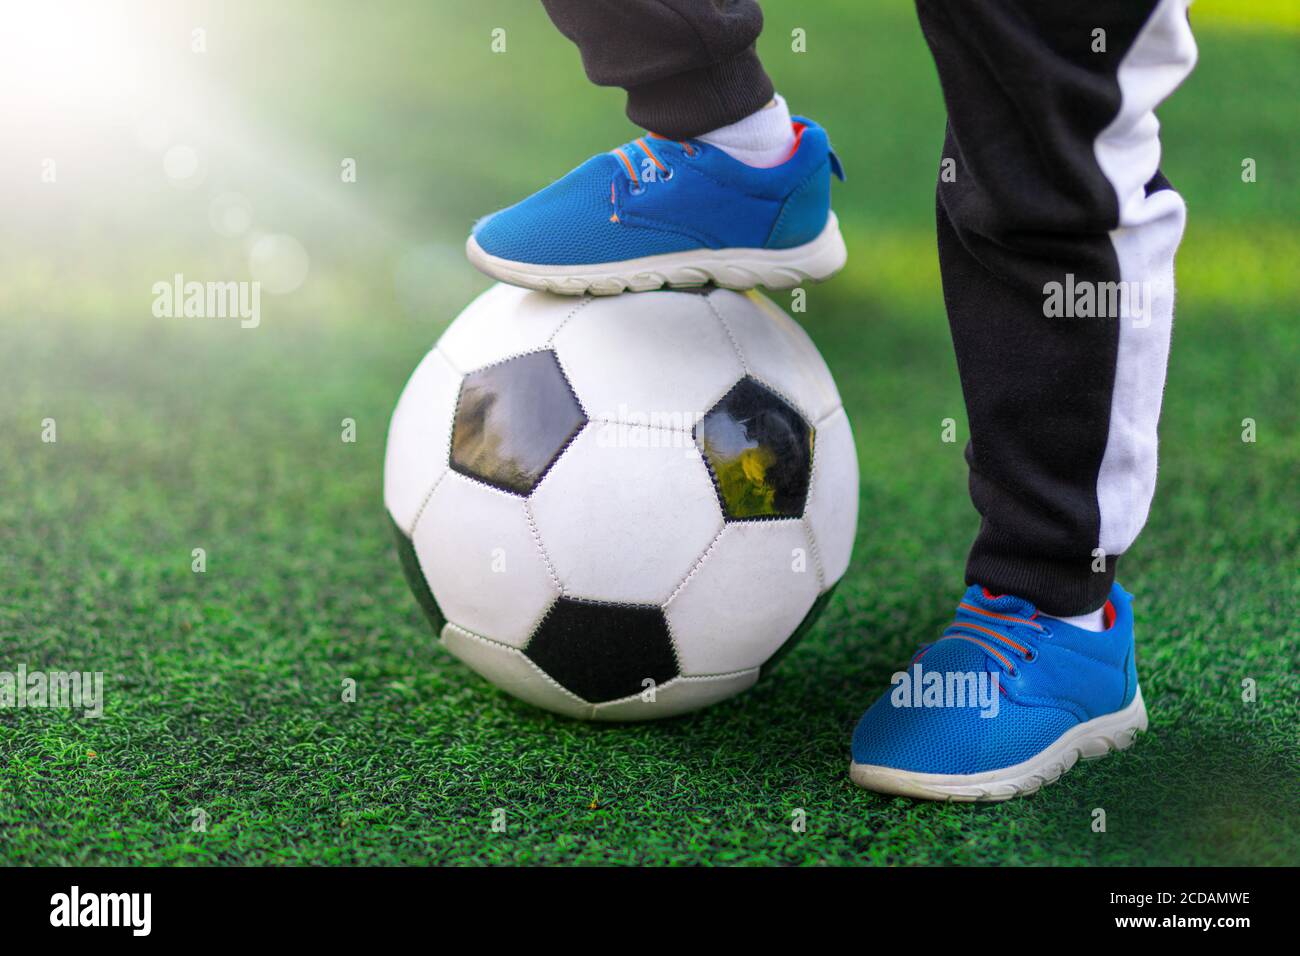 Le pied des enfants du vainqueur de la sneaker de chaussures de sport se tient sur un ballon de football contre un fond d'herbe. Gros plan sur le jeu et l'entraînement Banque D'Images